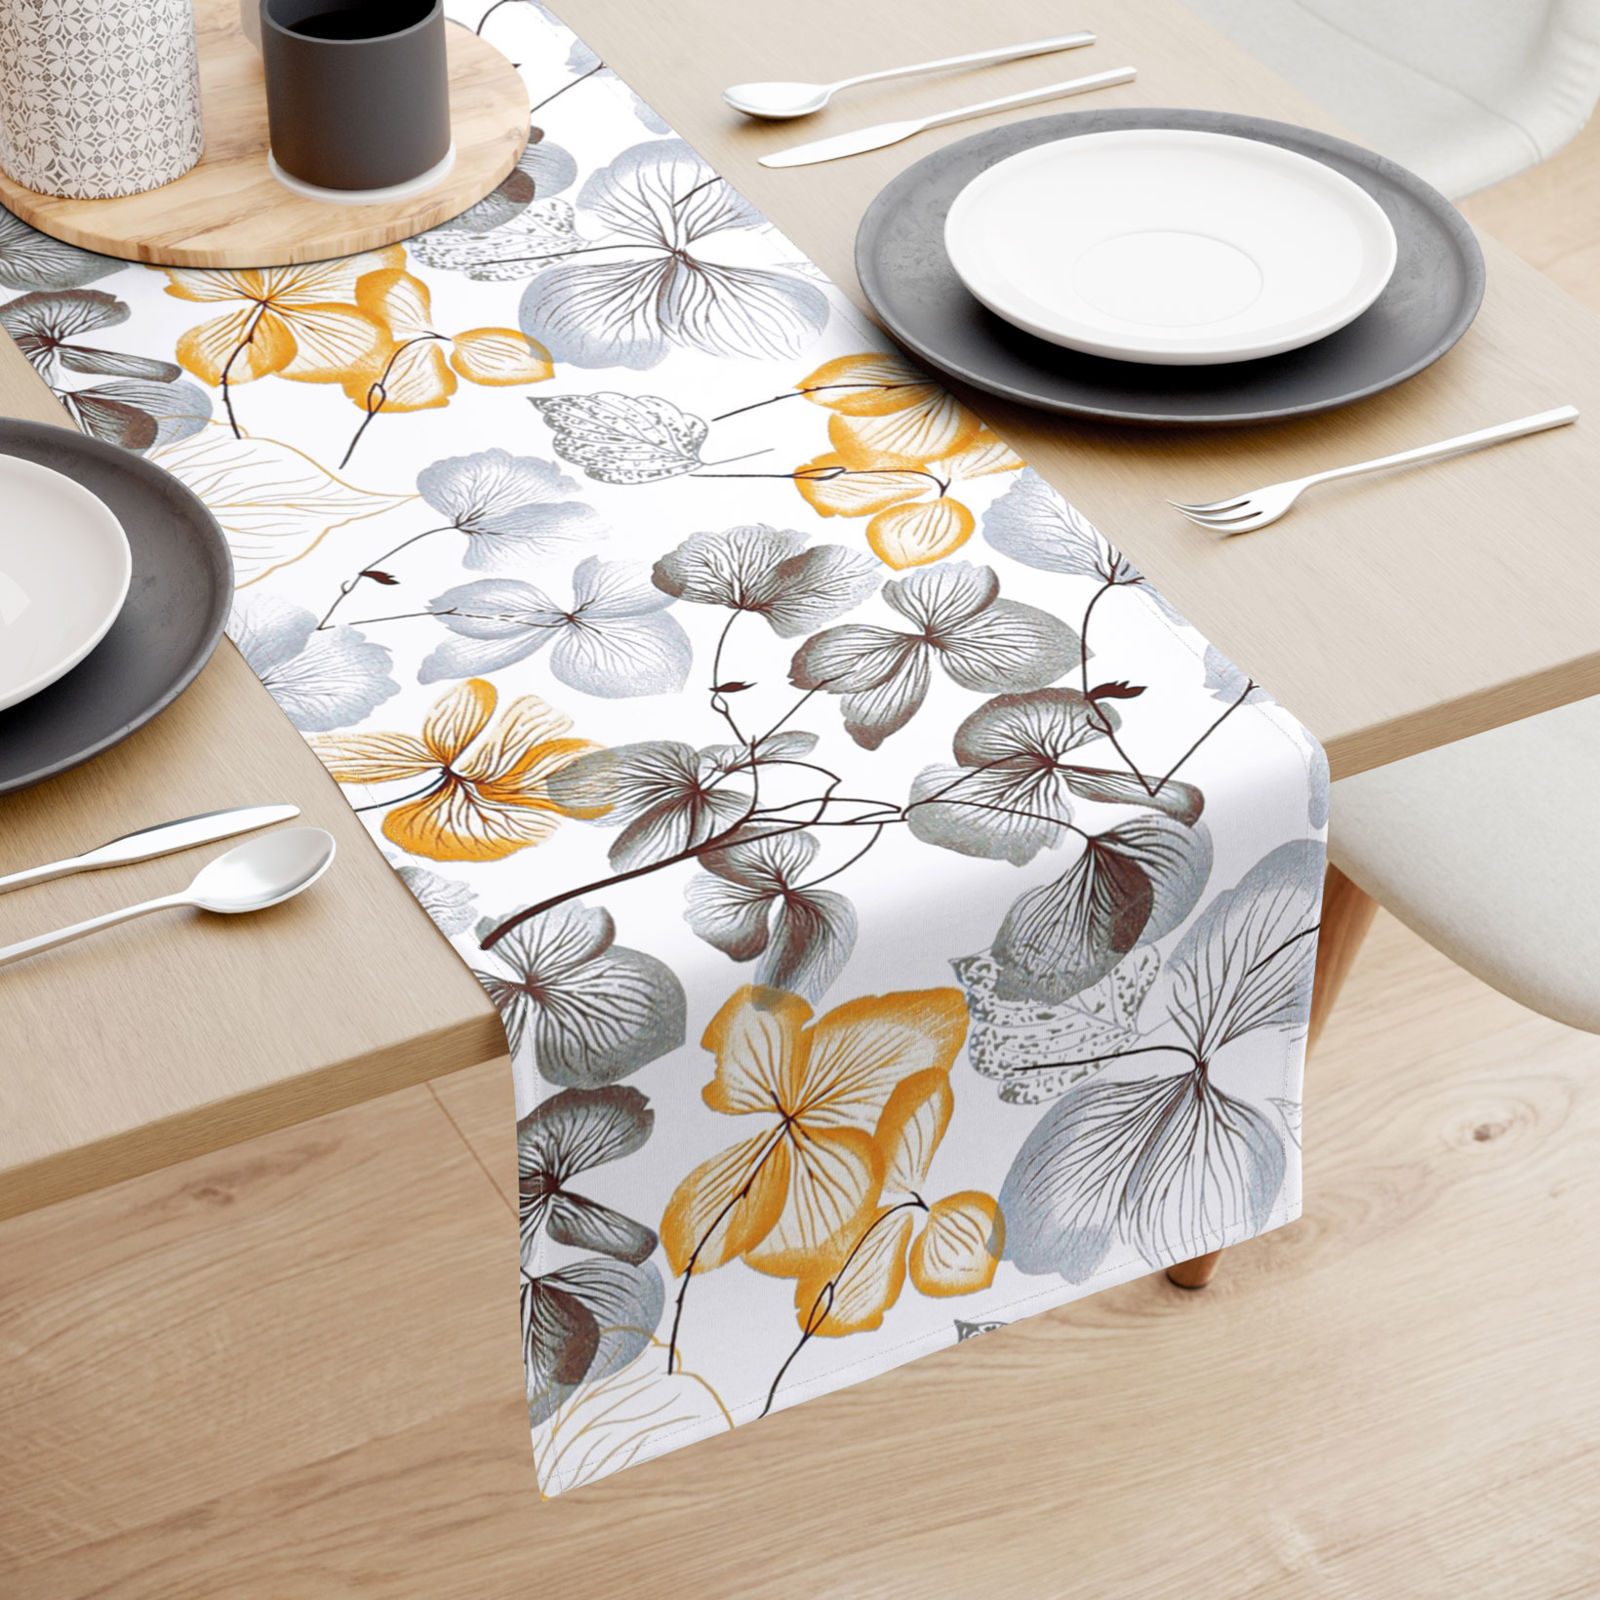 Behúň na stôl 100% bavlnené plátno - sivo-hnedé kvety s listami